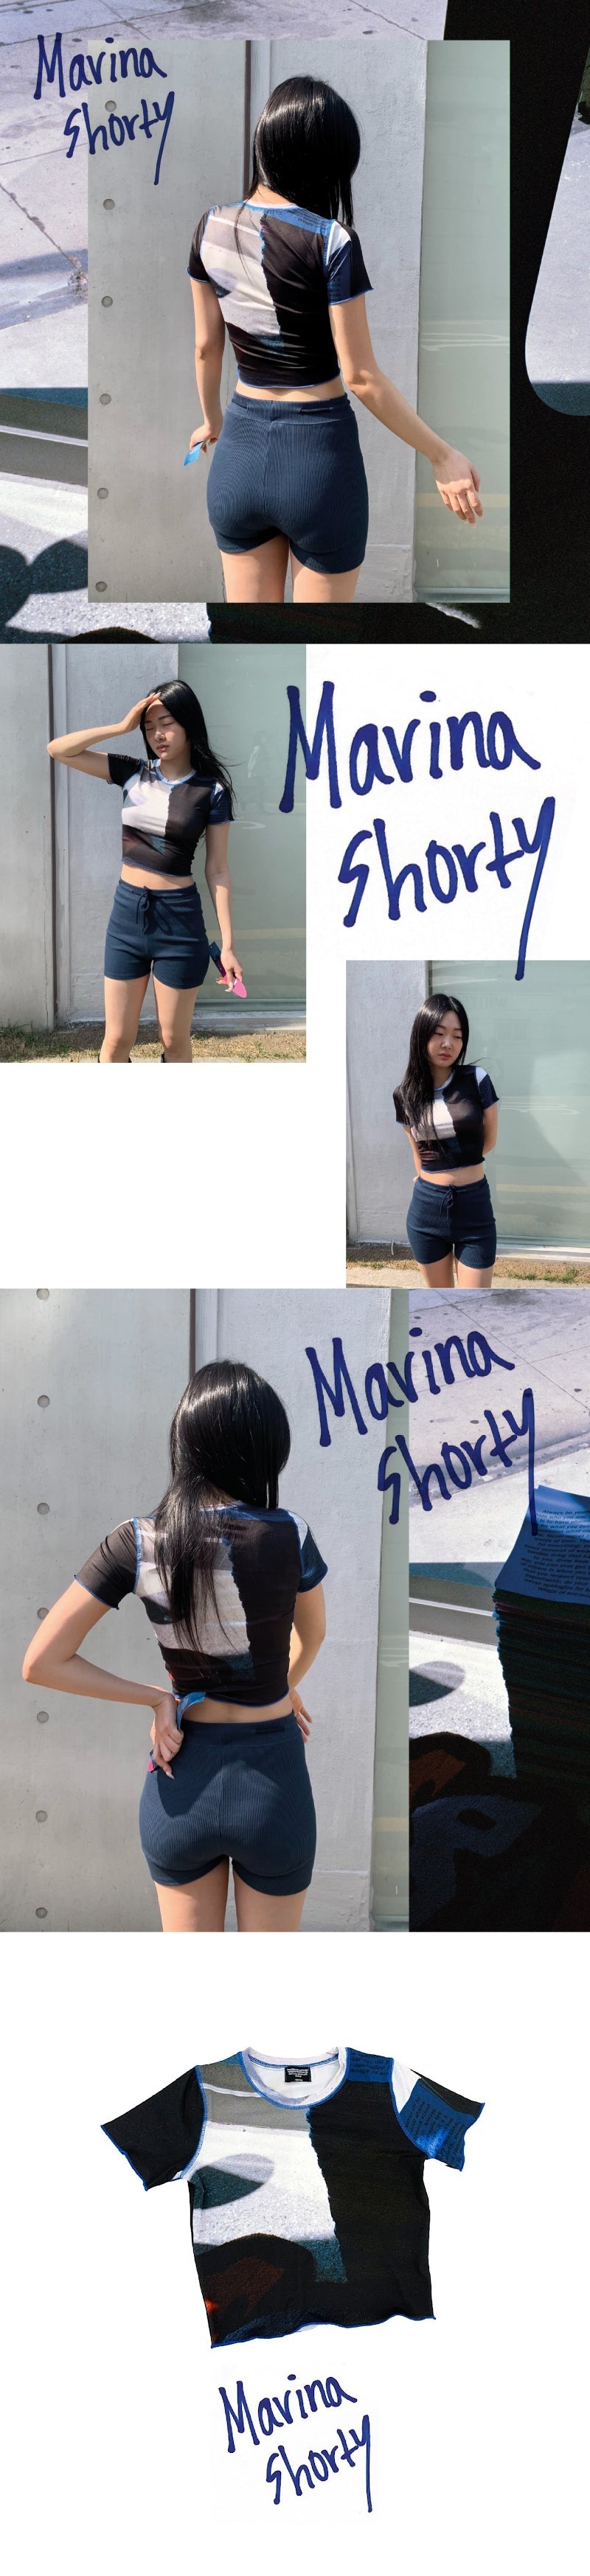 Marina shorty